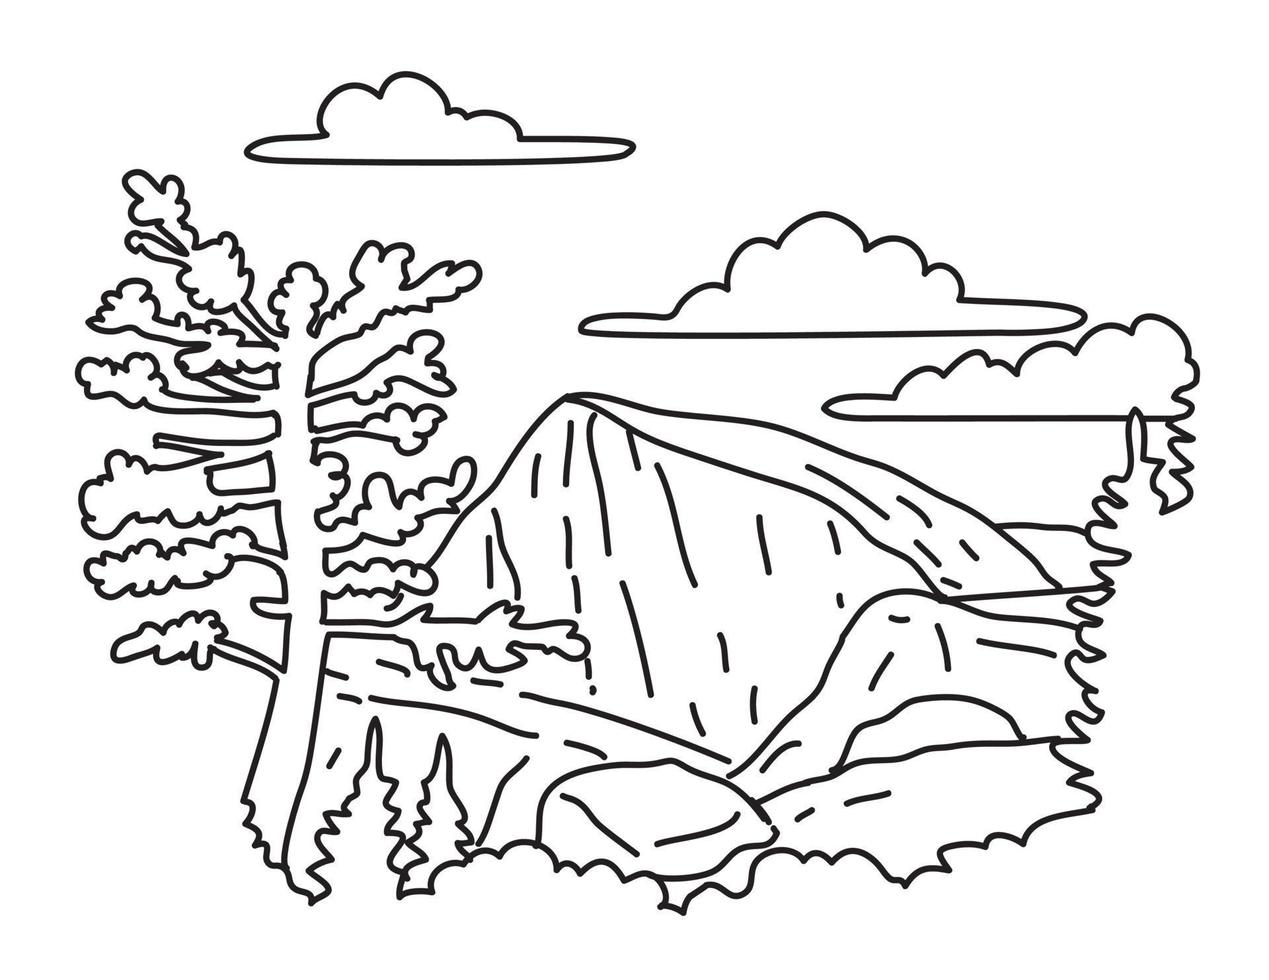 domo norte no parque nacional de yosemite, na crista indiana, desenho de arte de linha única na califórnia vetor